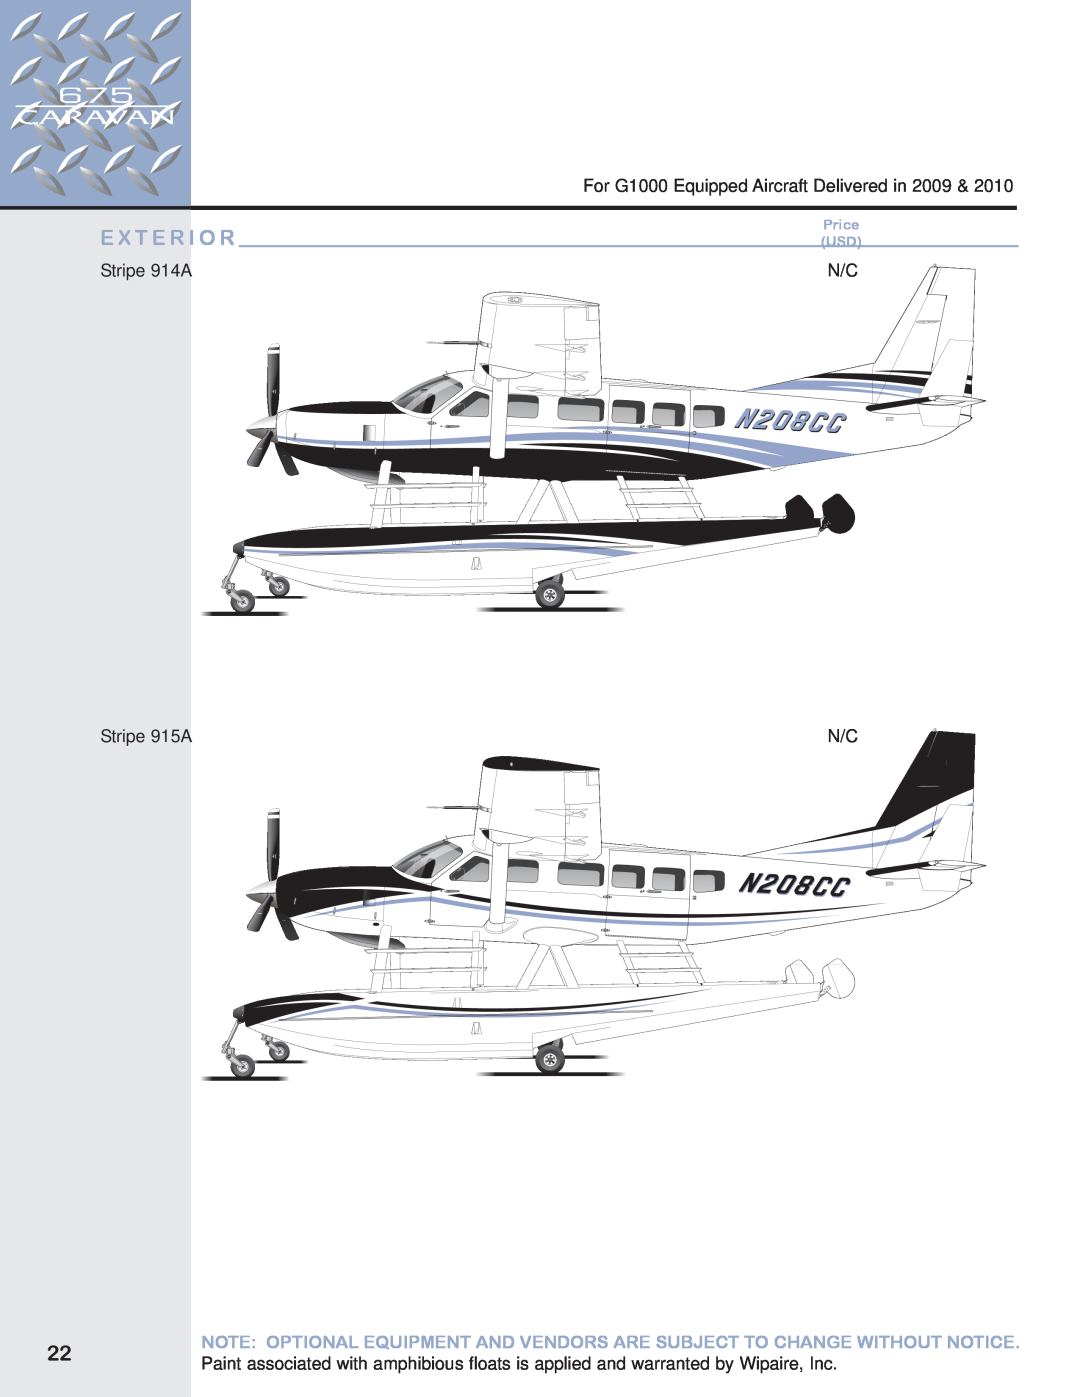 Garmin 675 manual E X T E R I O R, For G1000 Equipped Aircraft Delivered in, Stripe 914A, Stripe 915A, Price USD 